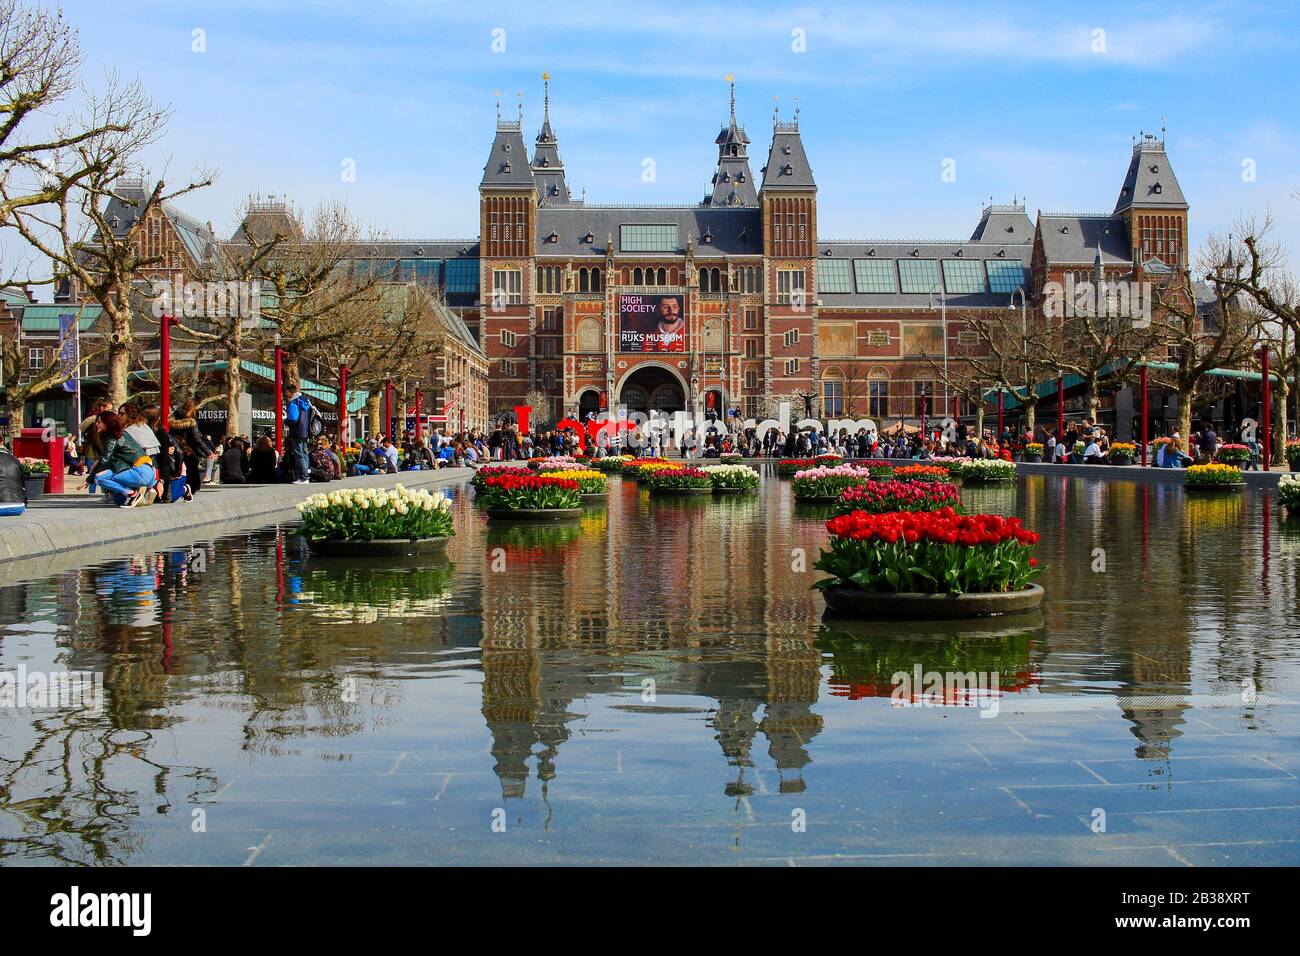 AMSTERDAM, Pays-Bas - 22 avril 2017 : Musée National Rijksmuseum Amsterdam avec je signe et tulipes au miroir d'eau. Amsterdam, Pays-Bas Banque D'Images